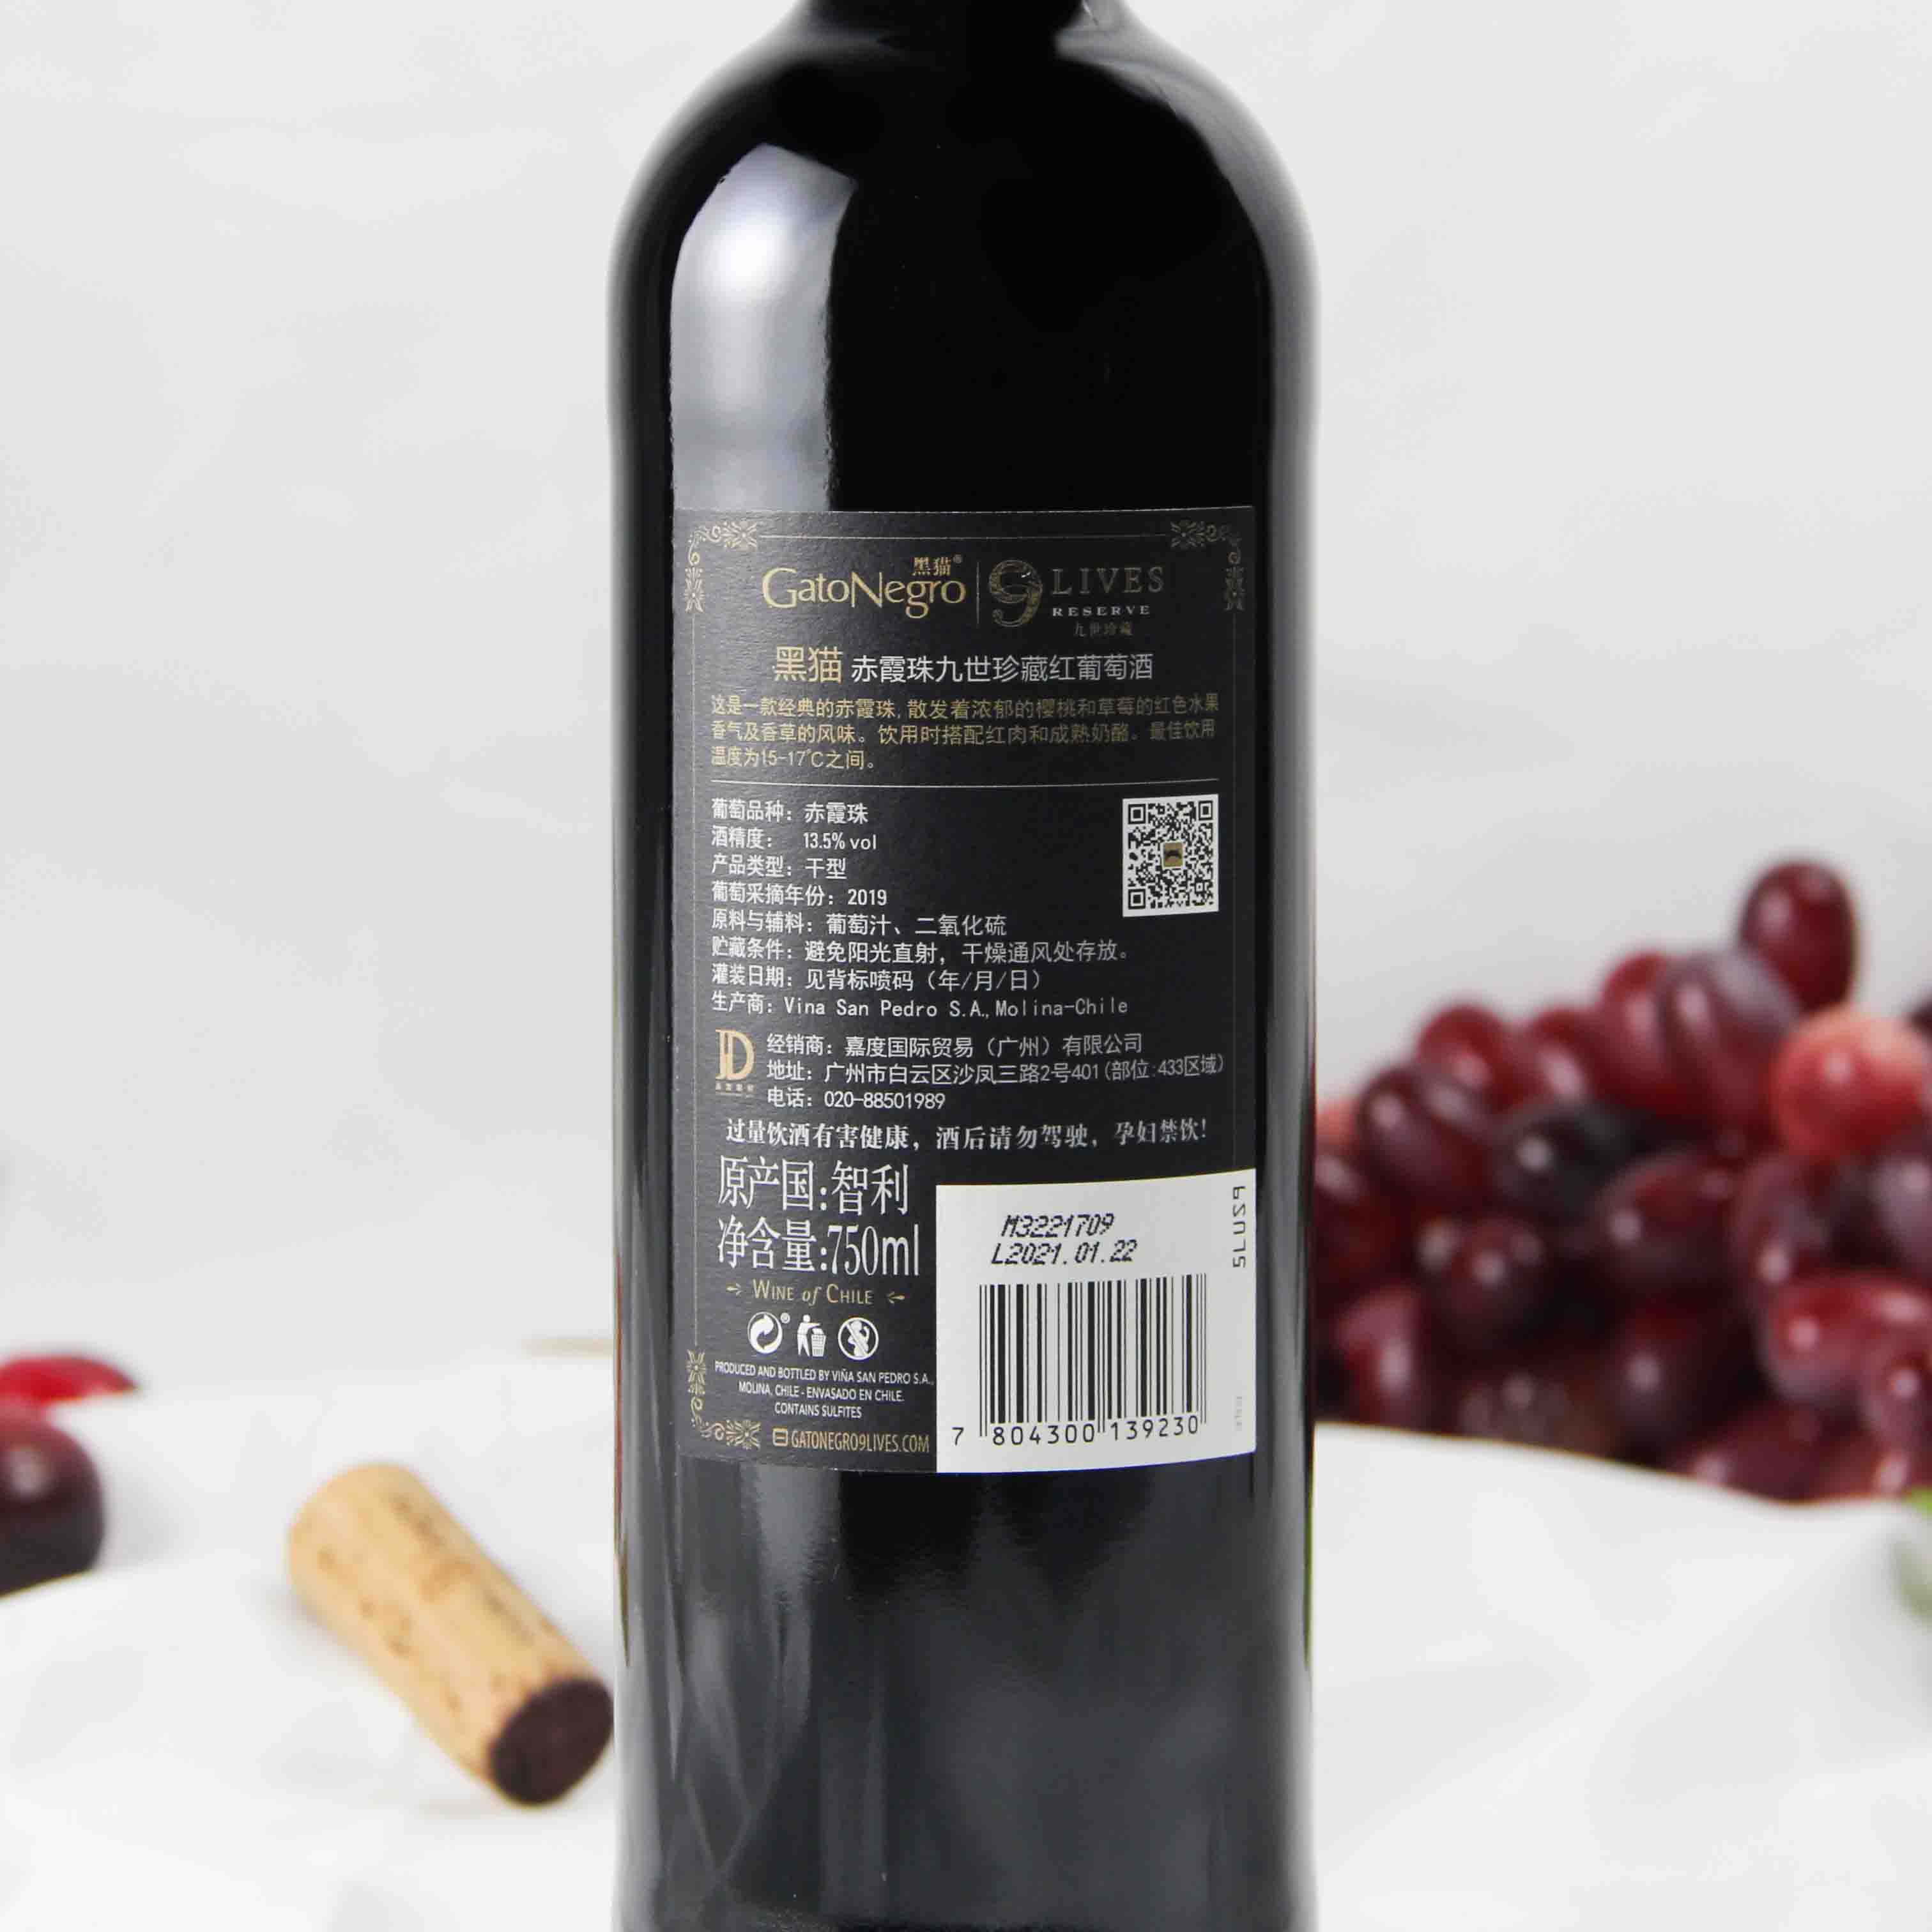 智利中央山谷黑猫赤霞珠九世珍藏红葡萄酒红酒